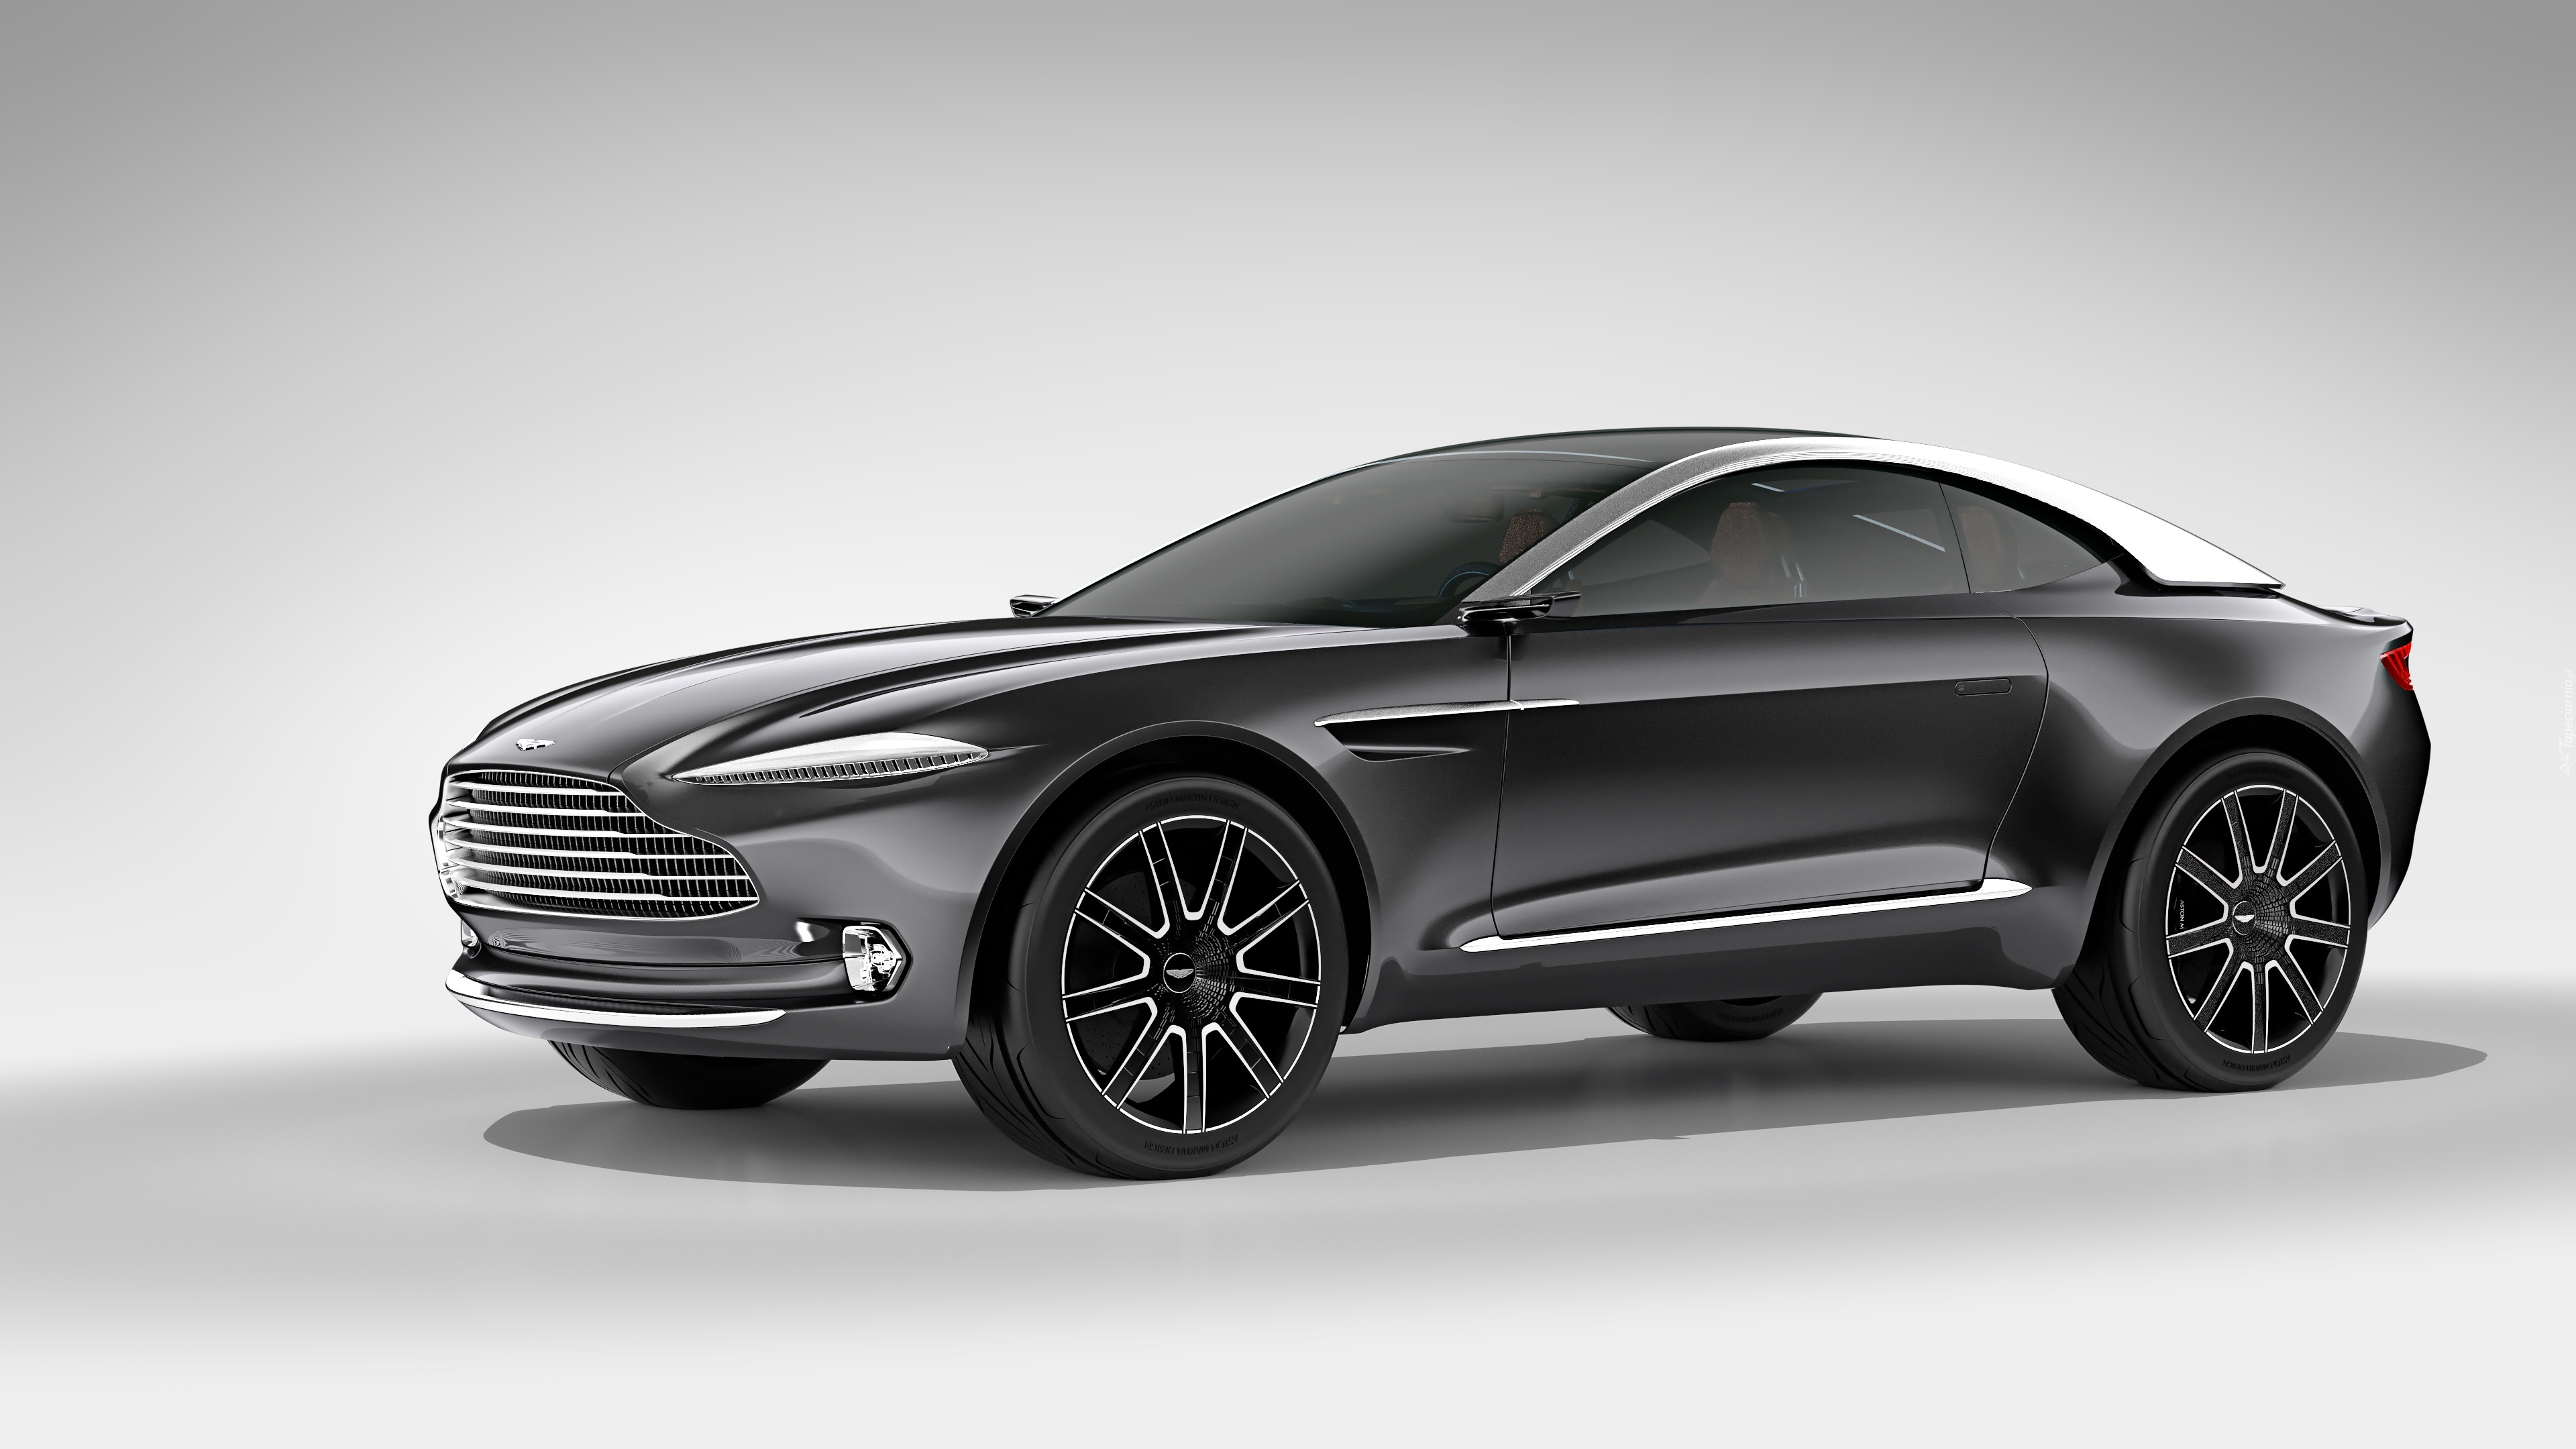 Aston Martin, DBX